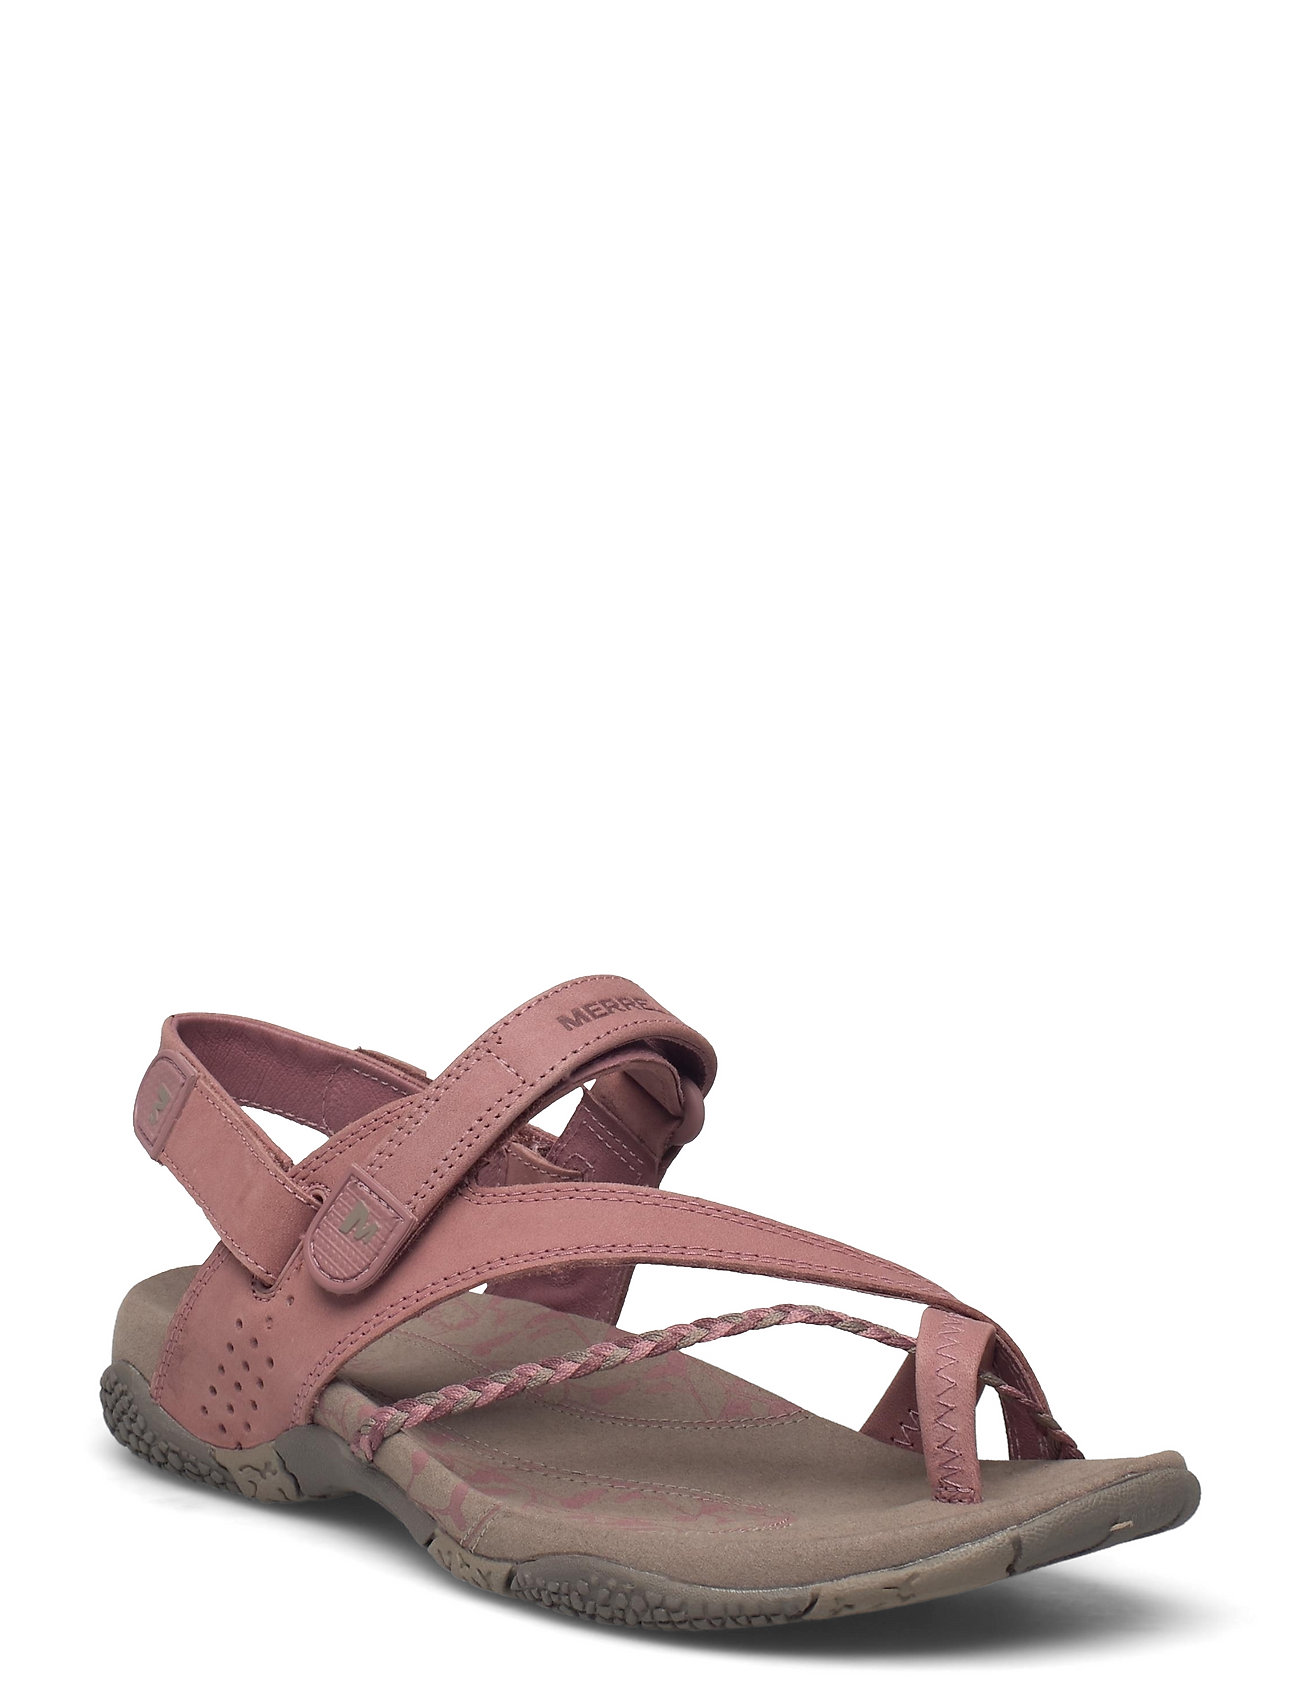 Merrell Women's Siena - Flat sandals - Boozt.com